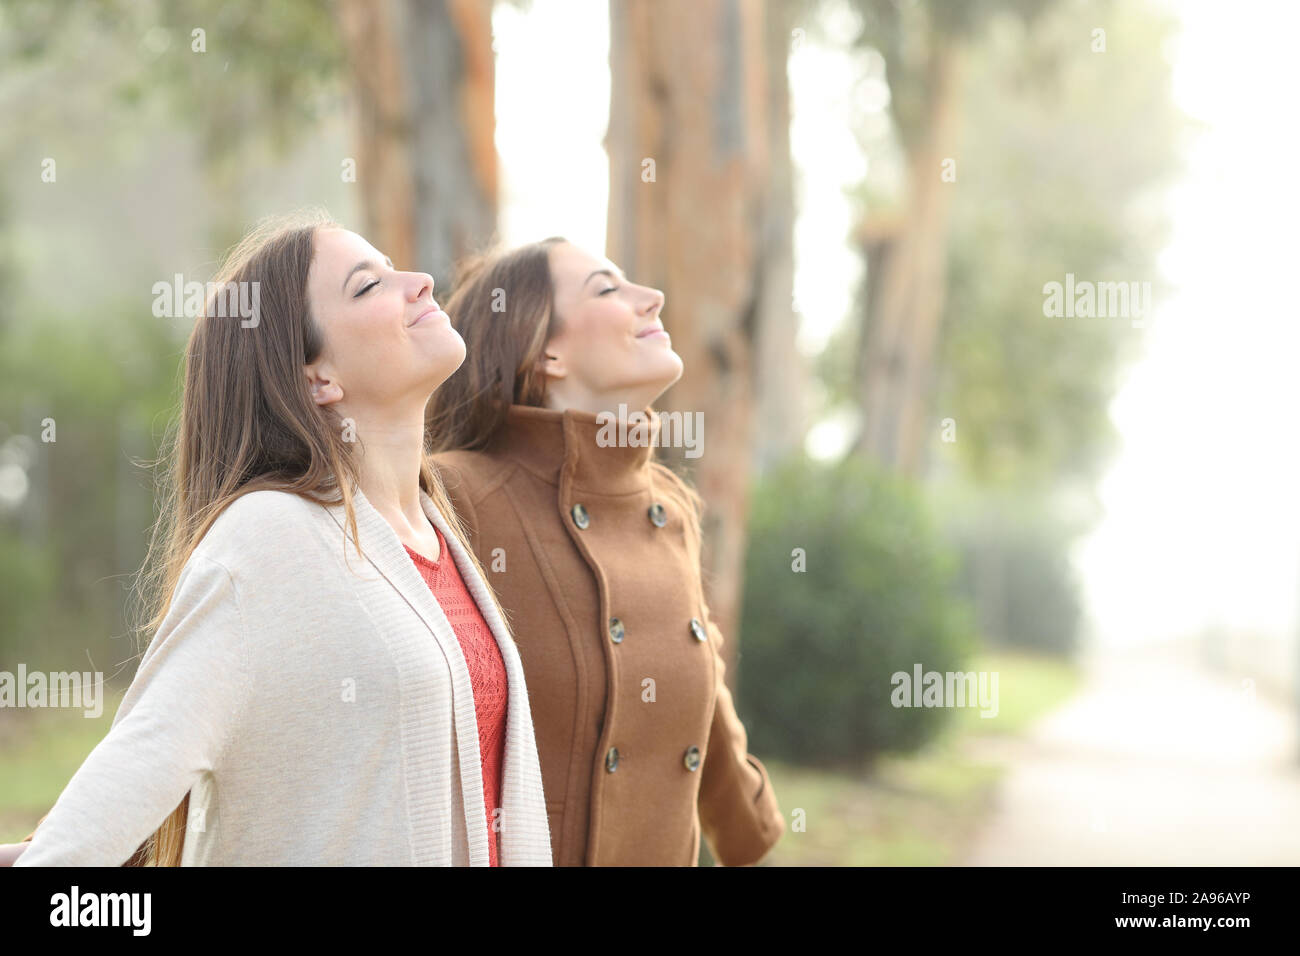 Zwei Frauen entspannt atmen tief die frische Luft stehend in einem Park Stockfoto